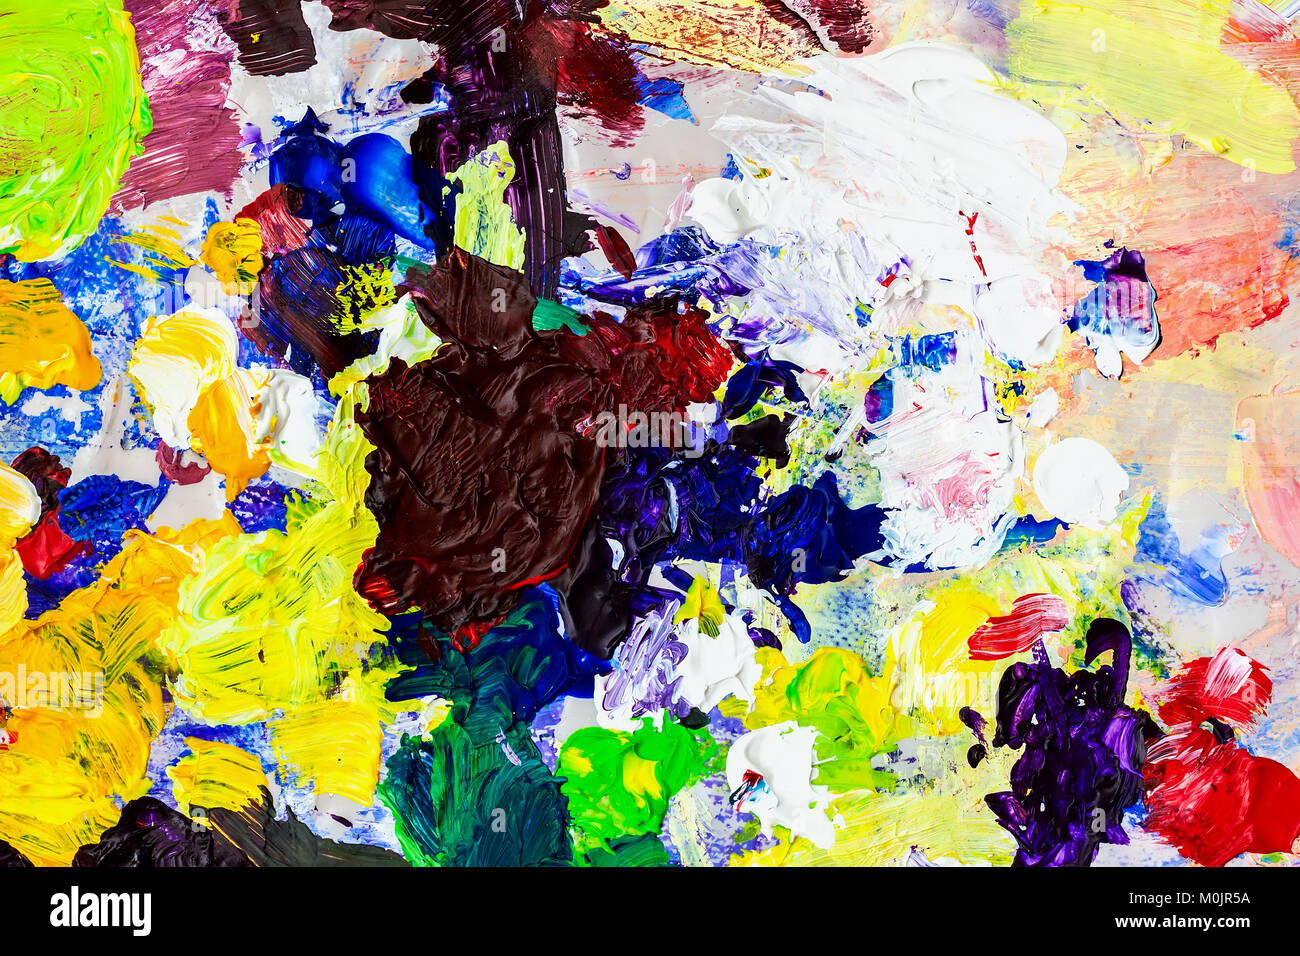 Tavolozza brillante dell artista, texture di misti ad olio vernici di colori diversi e contrastanti, mescolare la presenza di macchie e schizzi di trama per i moderni background creativo Foto Stock